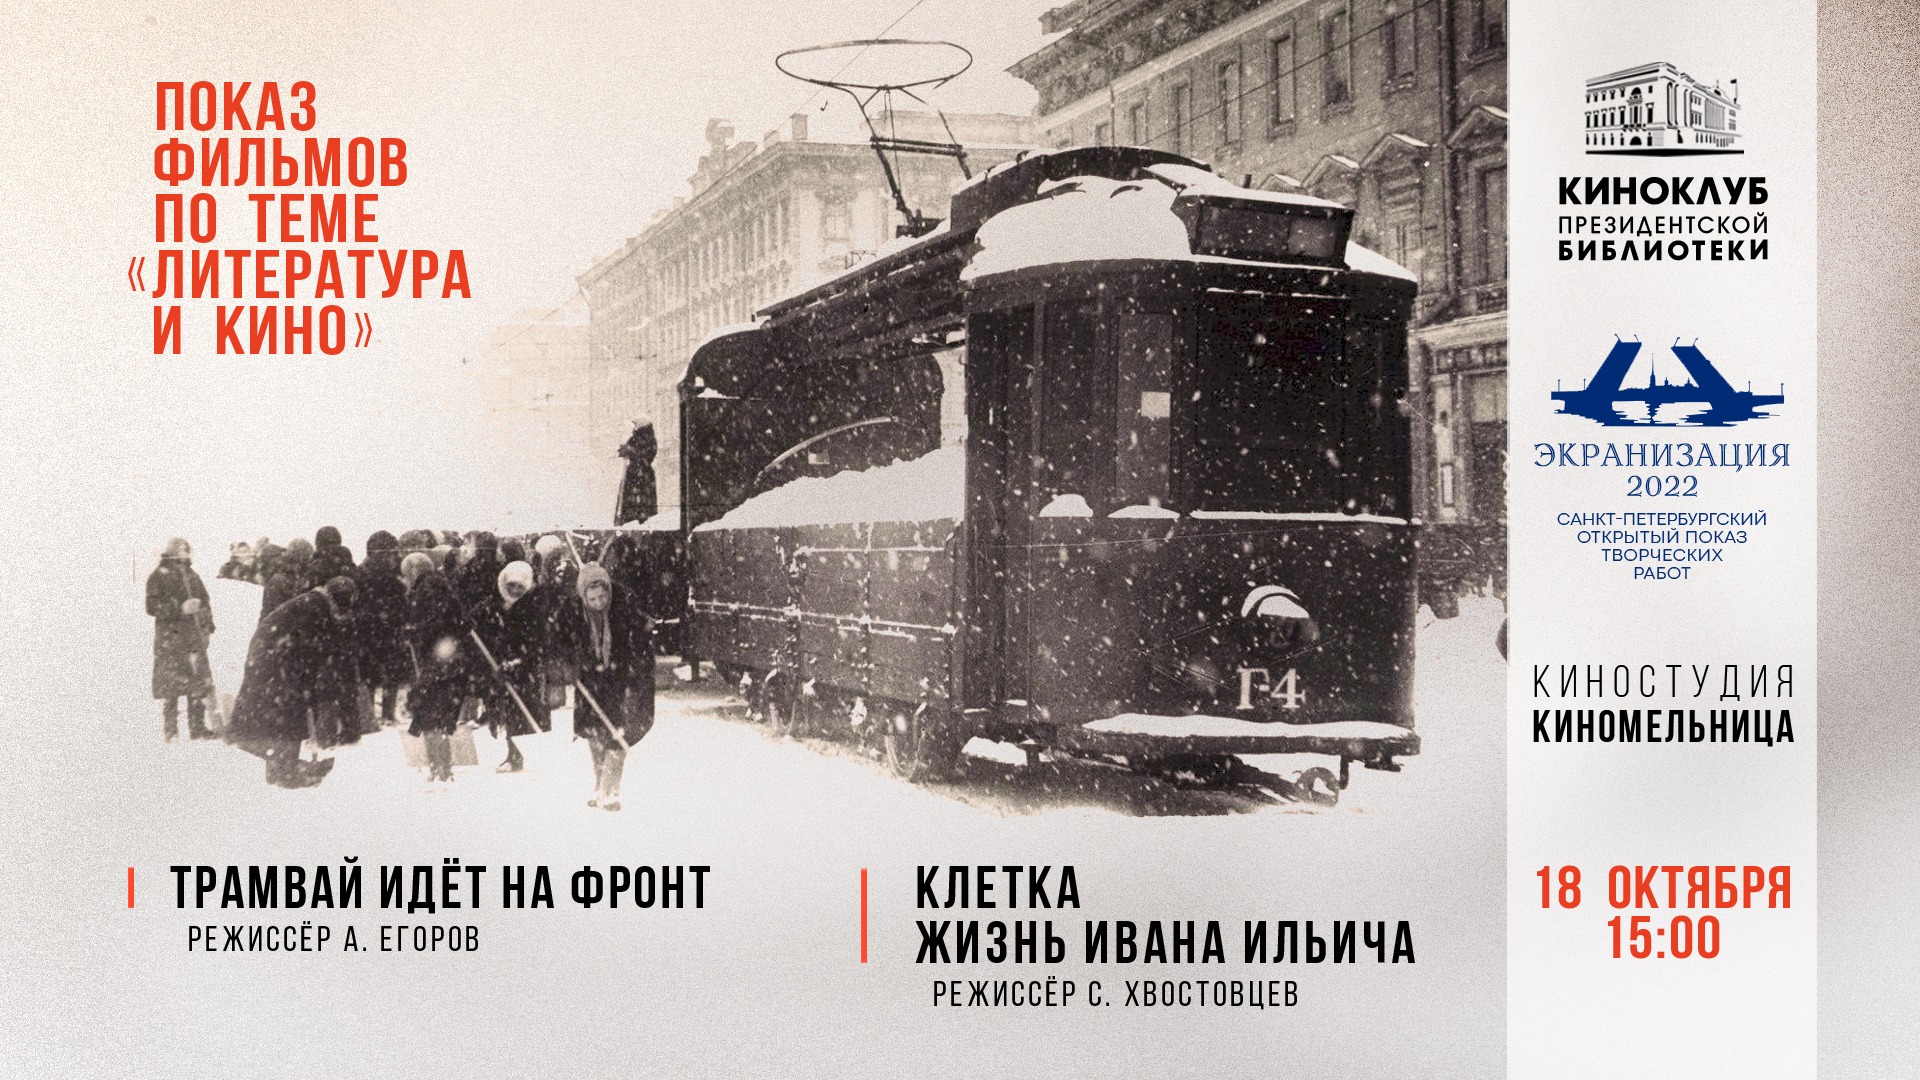 182-е заседание киноклуба ПБ: показ фильма «Трамвай идет на фронт», режиссер А. Егоров